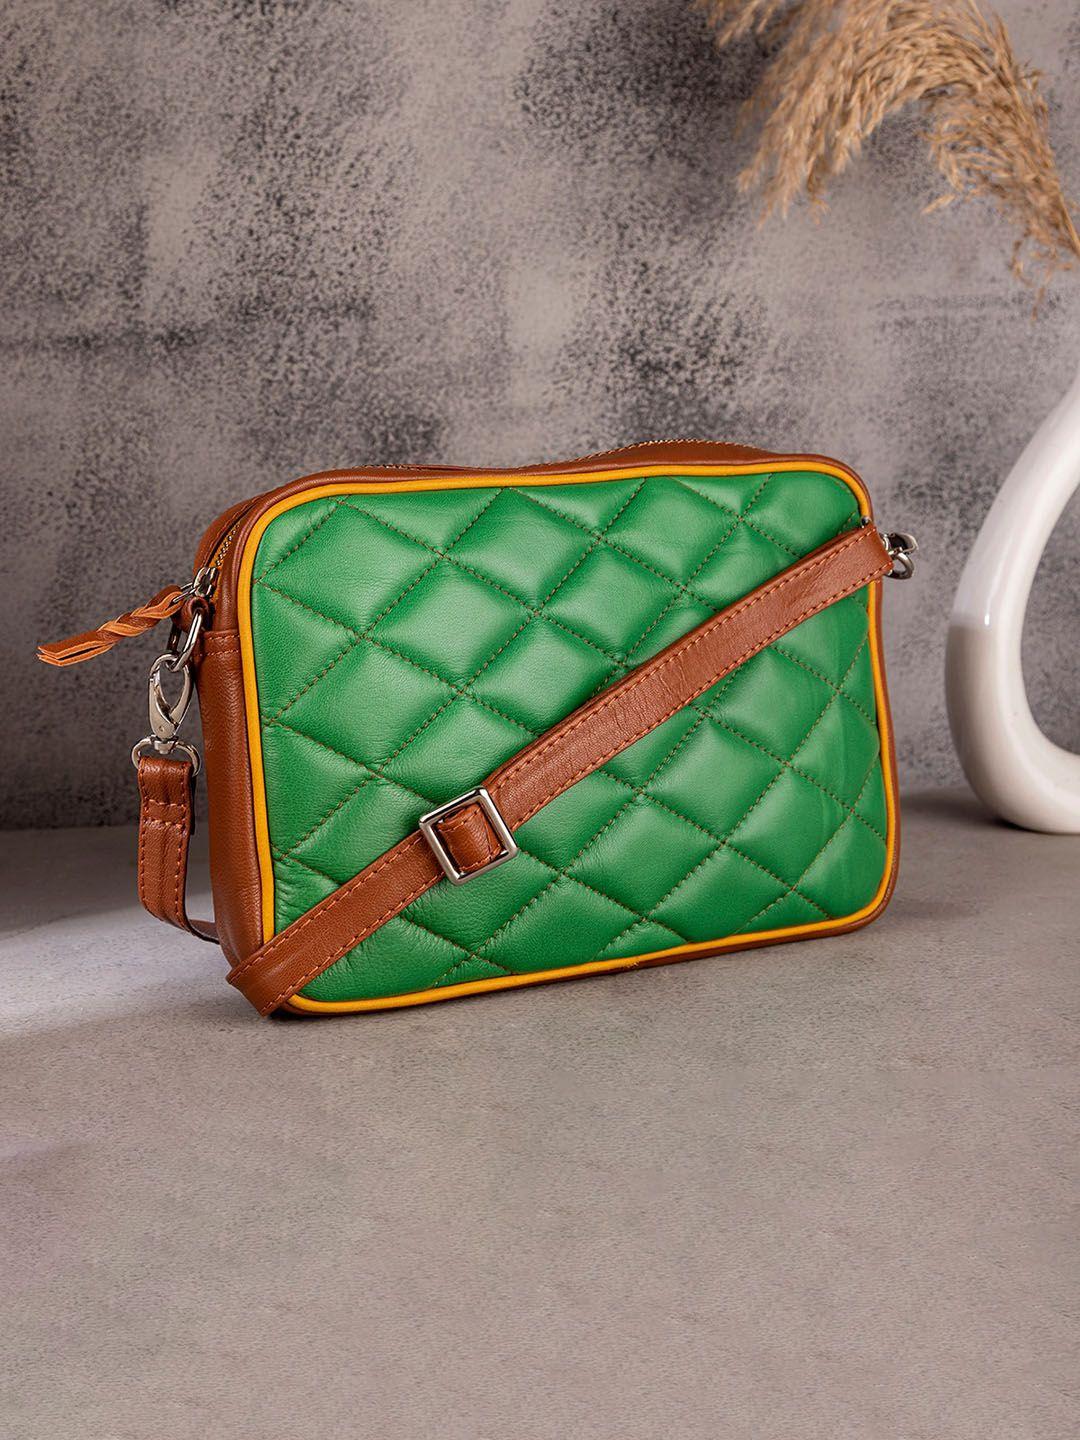 abelardo de moda leather structured quilted sling bag